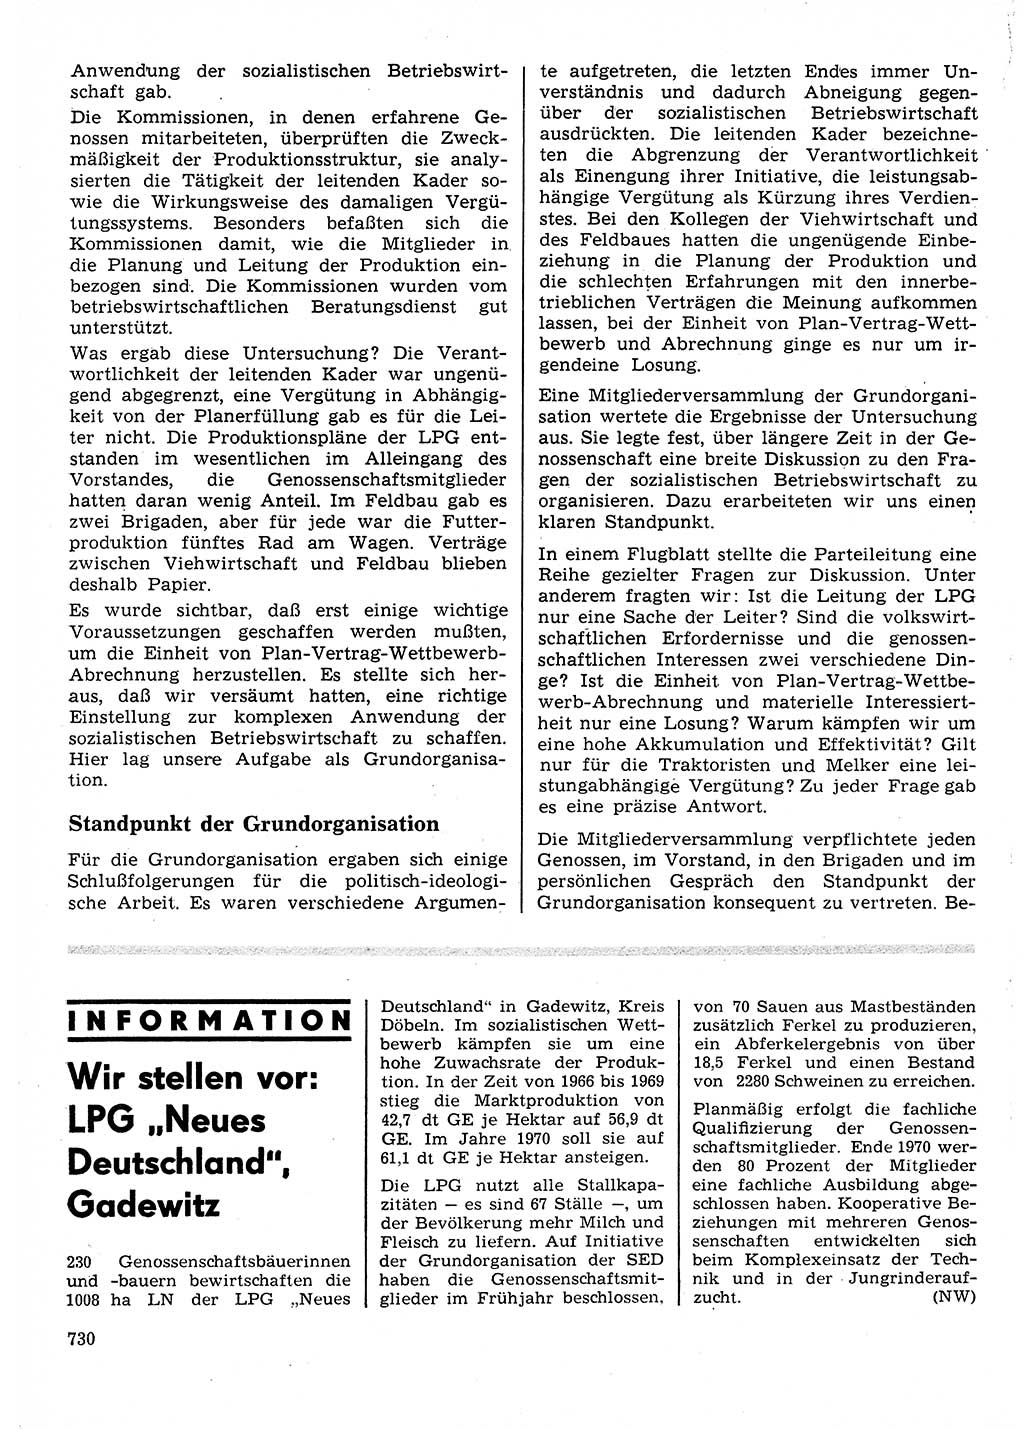 Neuer Weg (NW), Organ des Zentralkomitees (ZK) der SED (Sozialistische Einheitspartei Deutschlands) fÃ¼r Fragen des Parteilebens, 25. Jahrgang [Deutsche Demokratische Republik (DDR)] 1970, Seite 730 (NW ZK SED DDR 1970, S. 730)